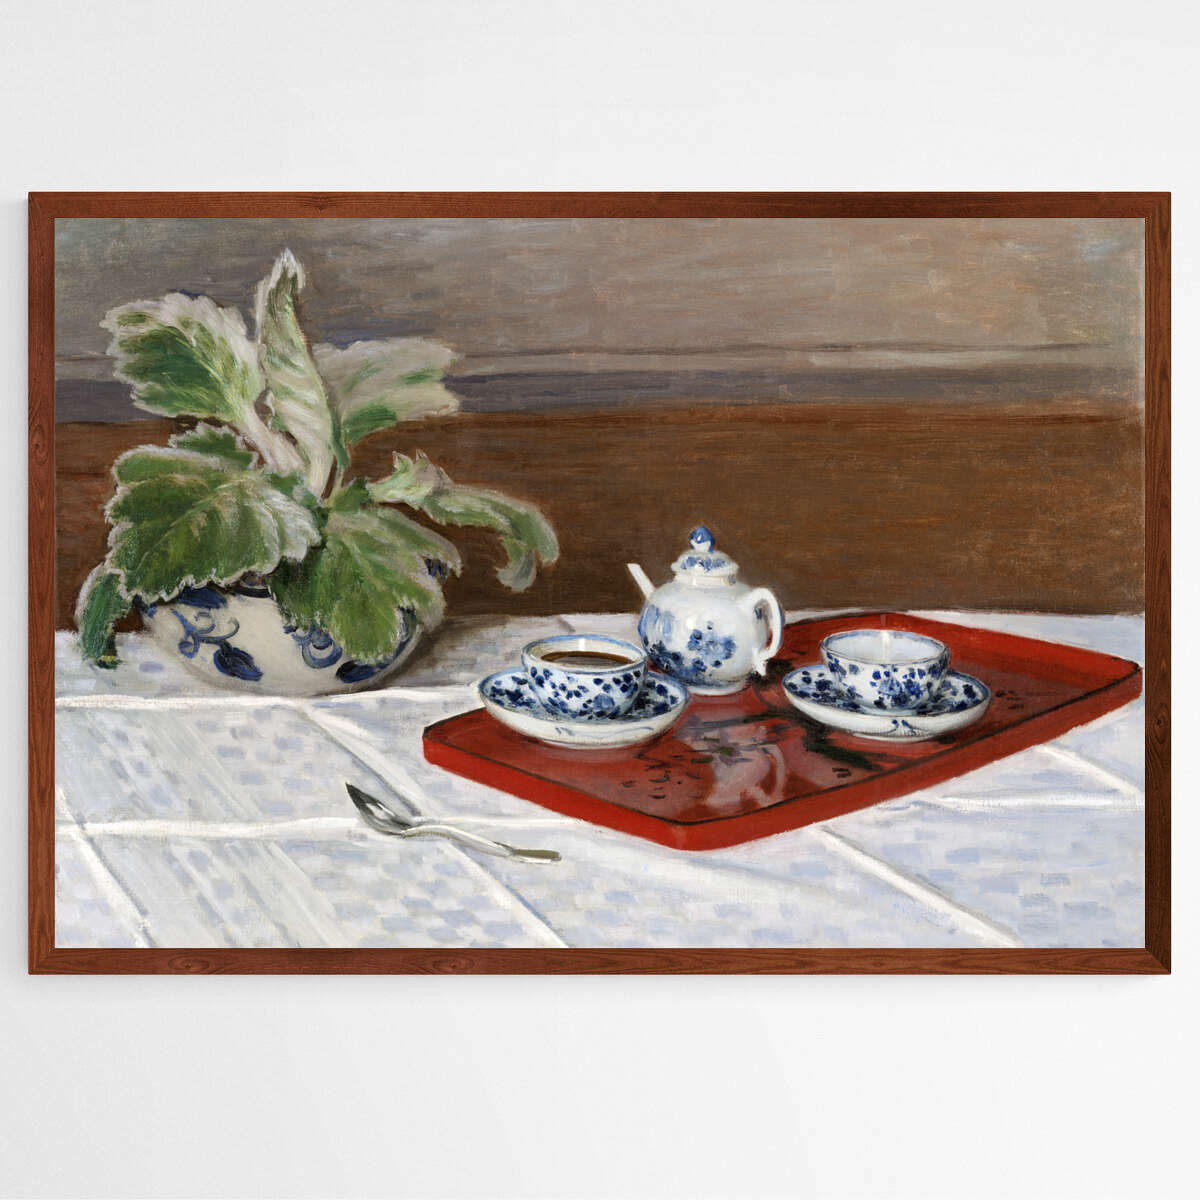 Tea Service by Claude Monet | Claude Monet Wall Art Prints - The Canvas Hive